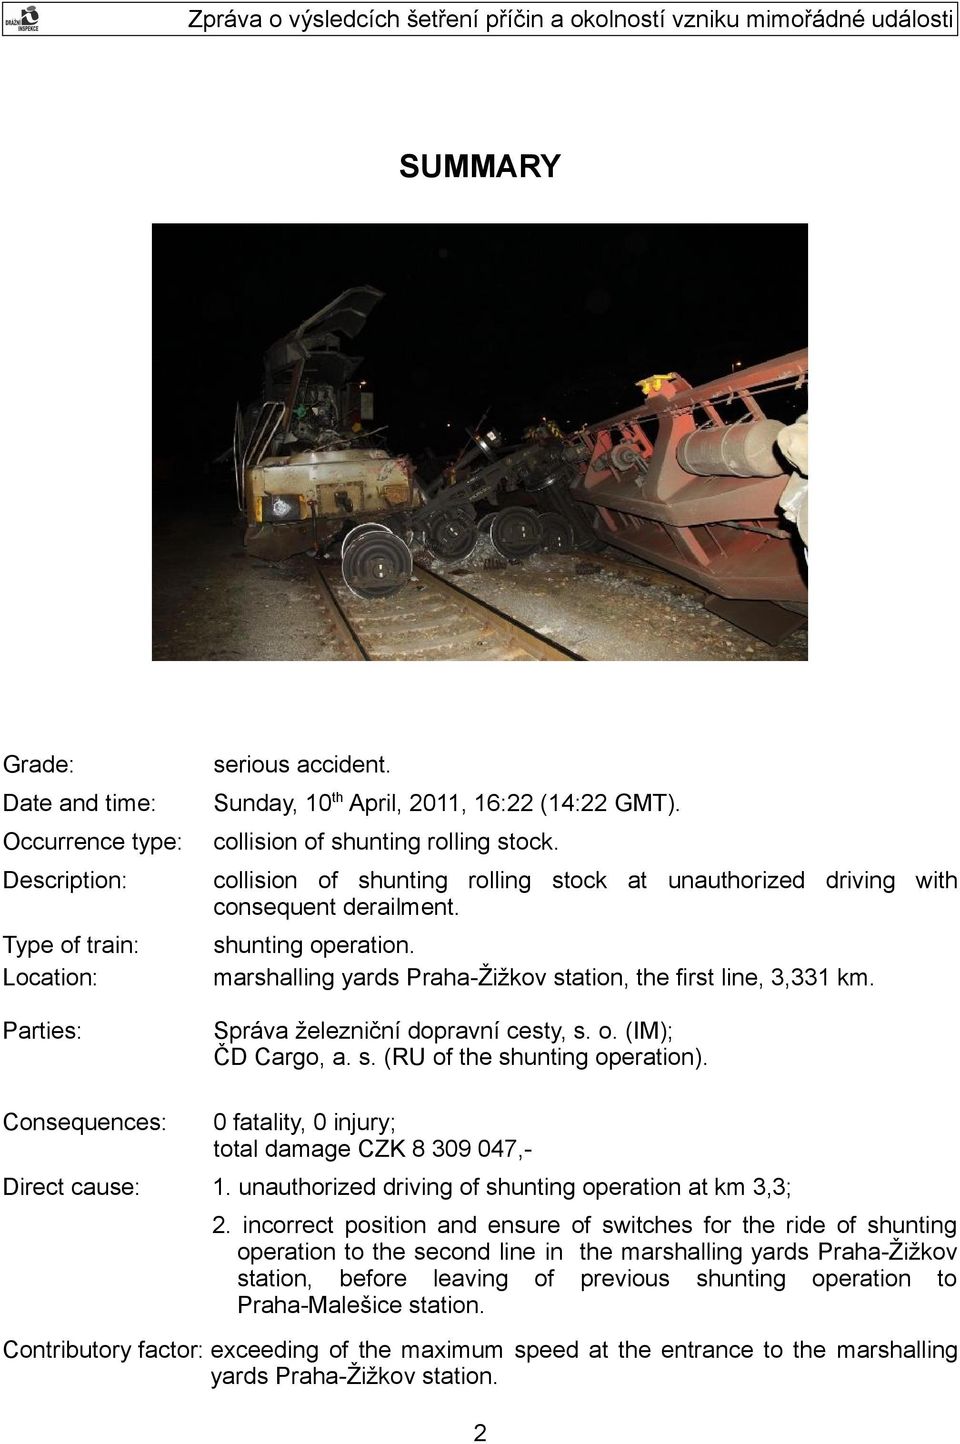 Správa železniční dopravní cesty, s. o. (IM); ČD Cargo, a. s. (RU of the shunting operation). Consequences: 0 fatality, 0 injury; total damage CZK 8 309 047,- Direct cause: 1.